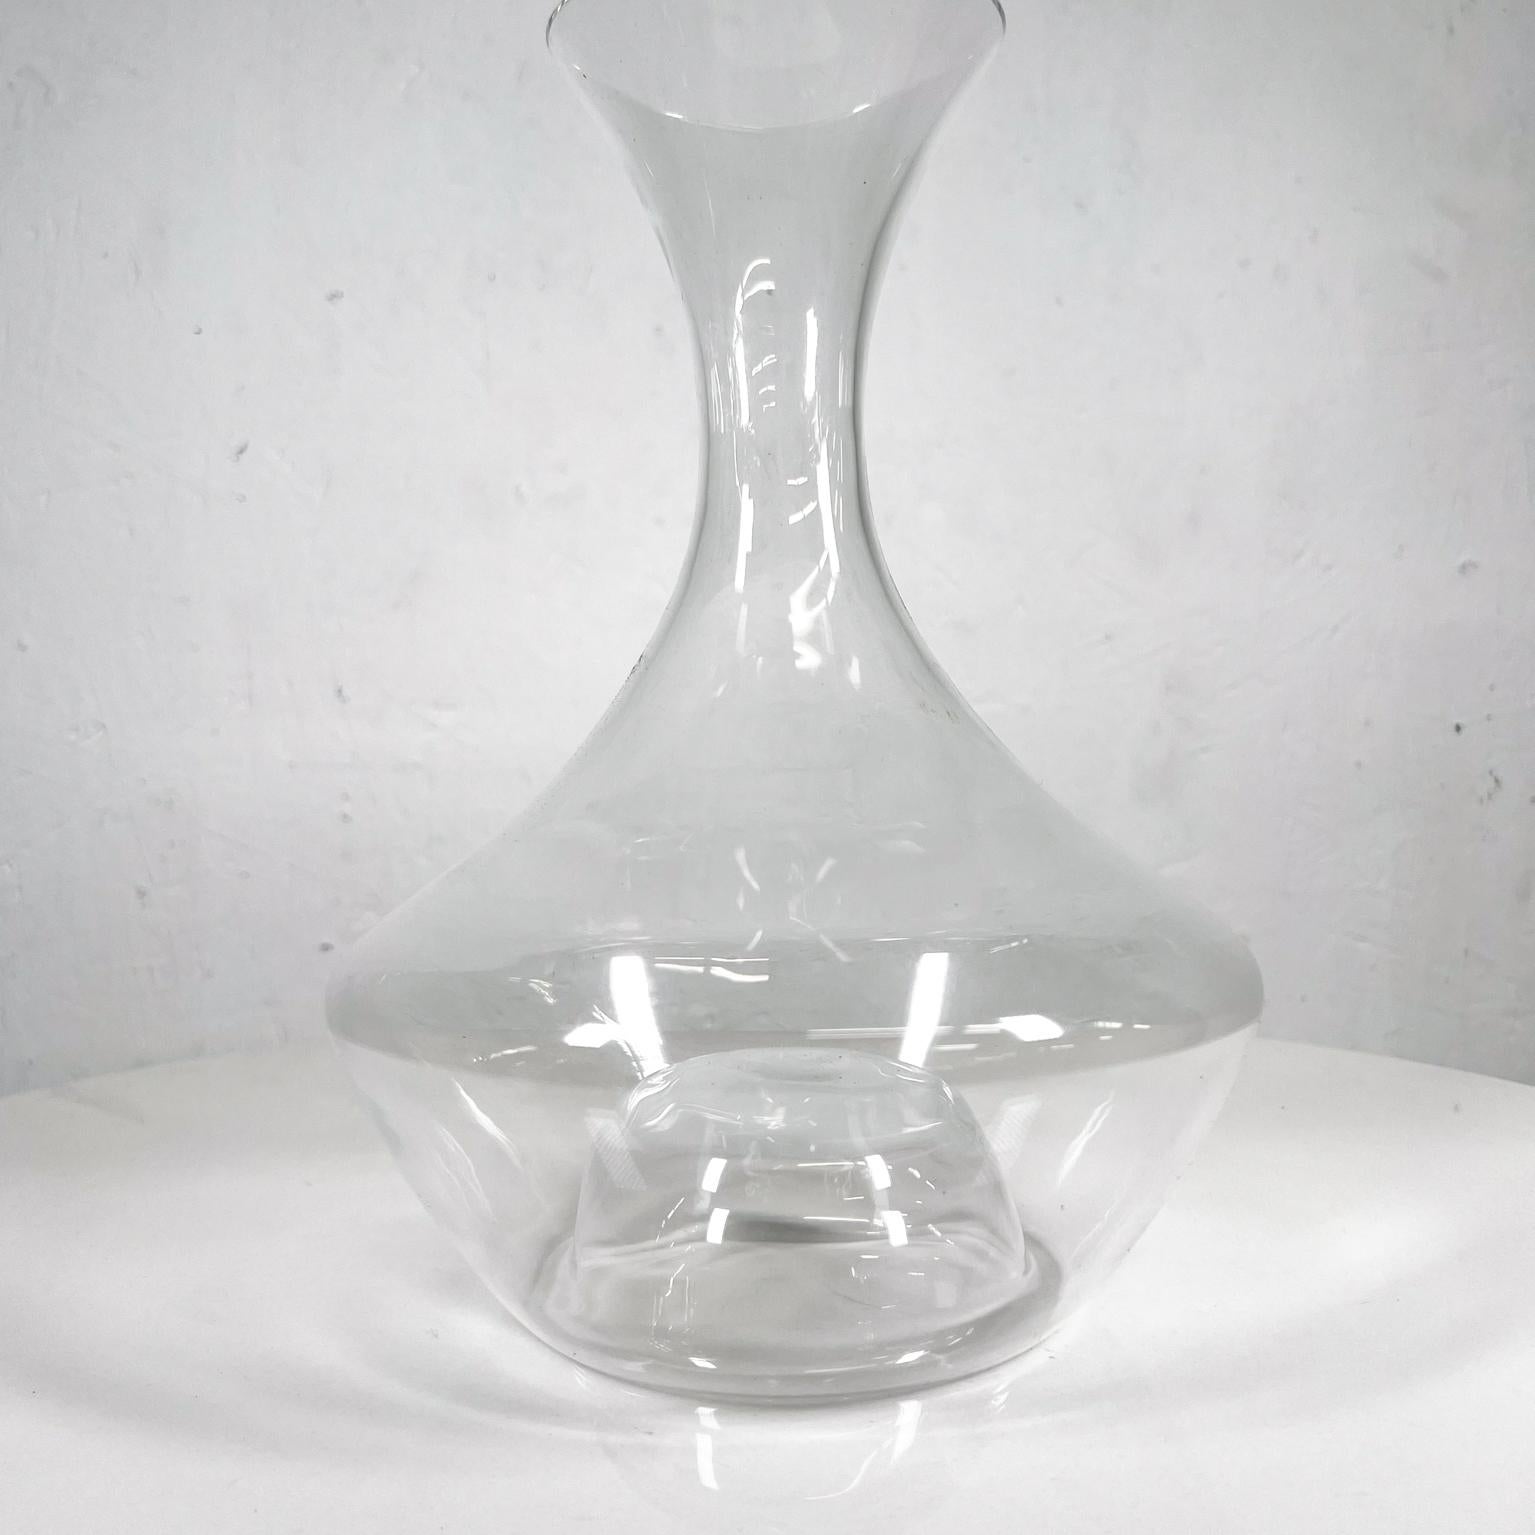 Tom Nybroe Sculptural Wine Decanter Glass Carafe Danish Design Holmegaard 2